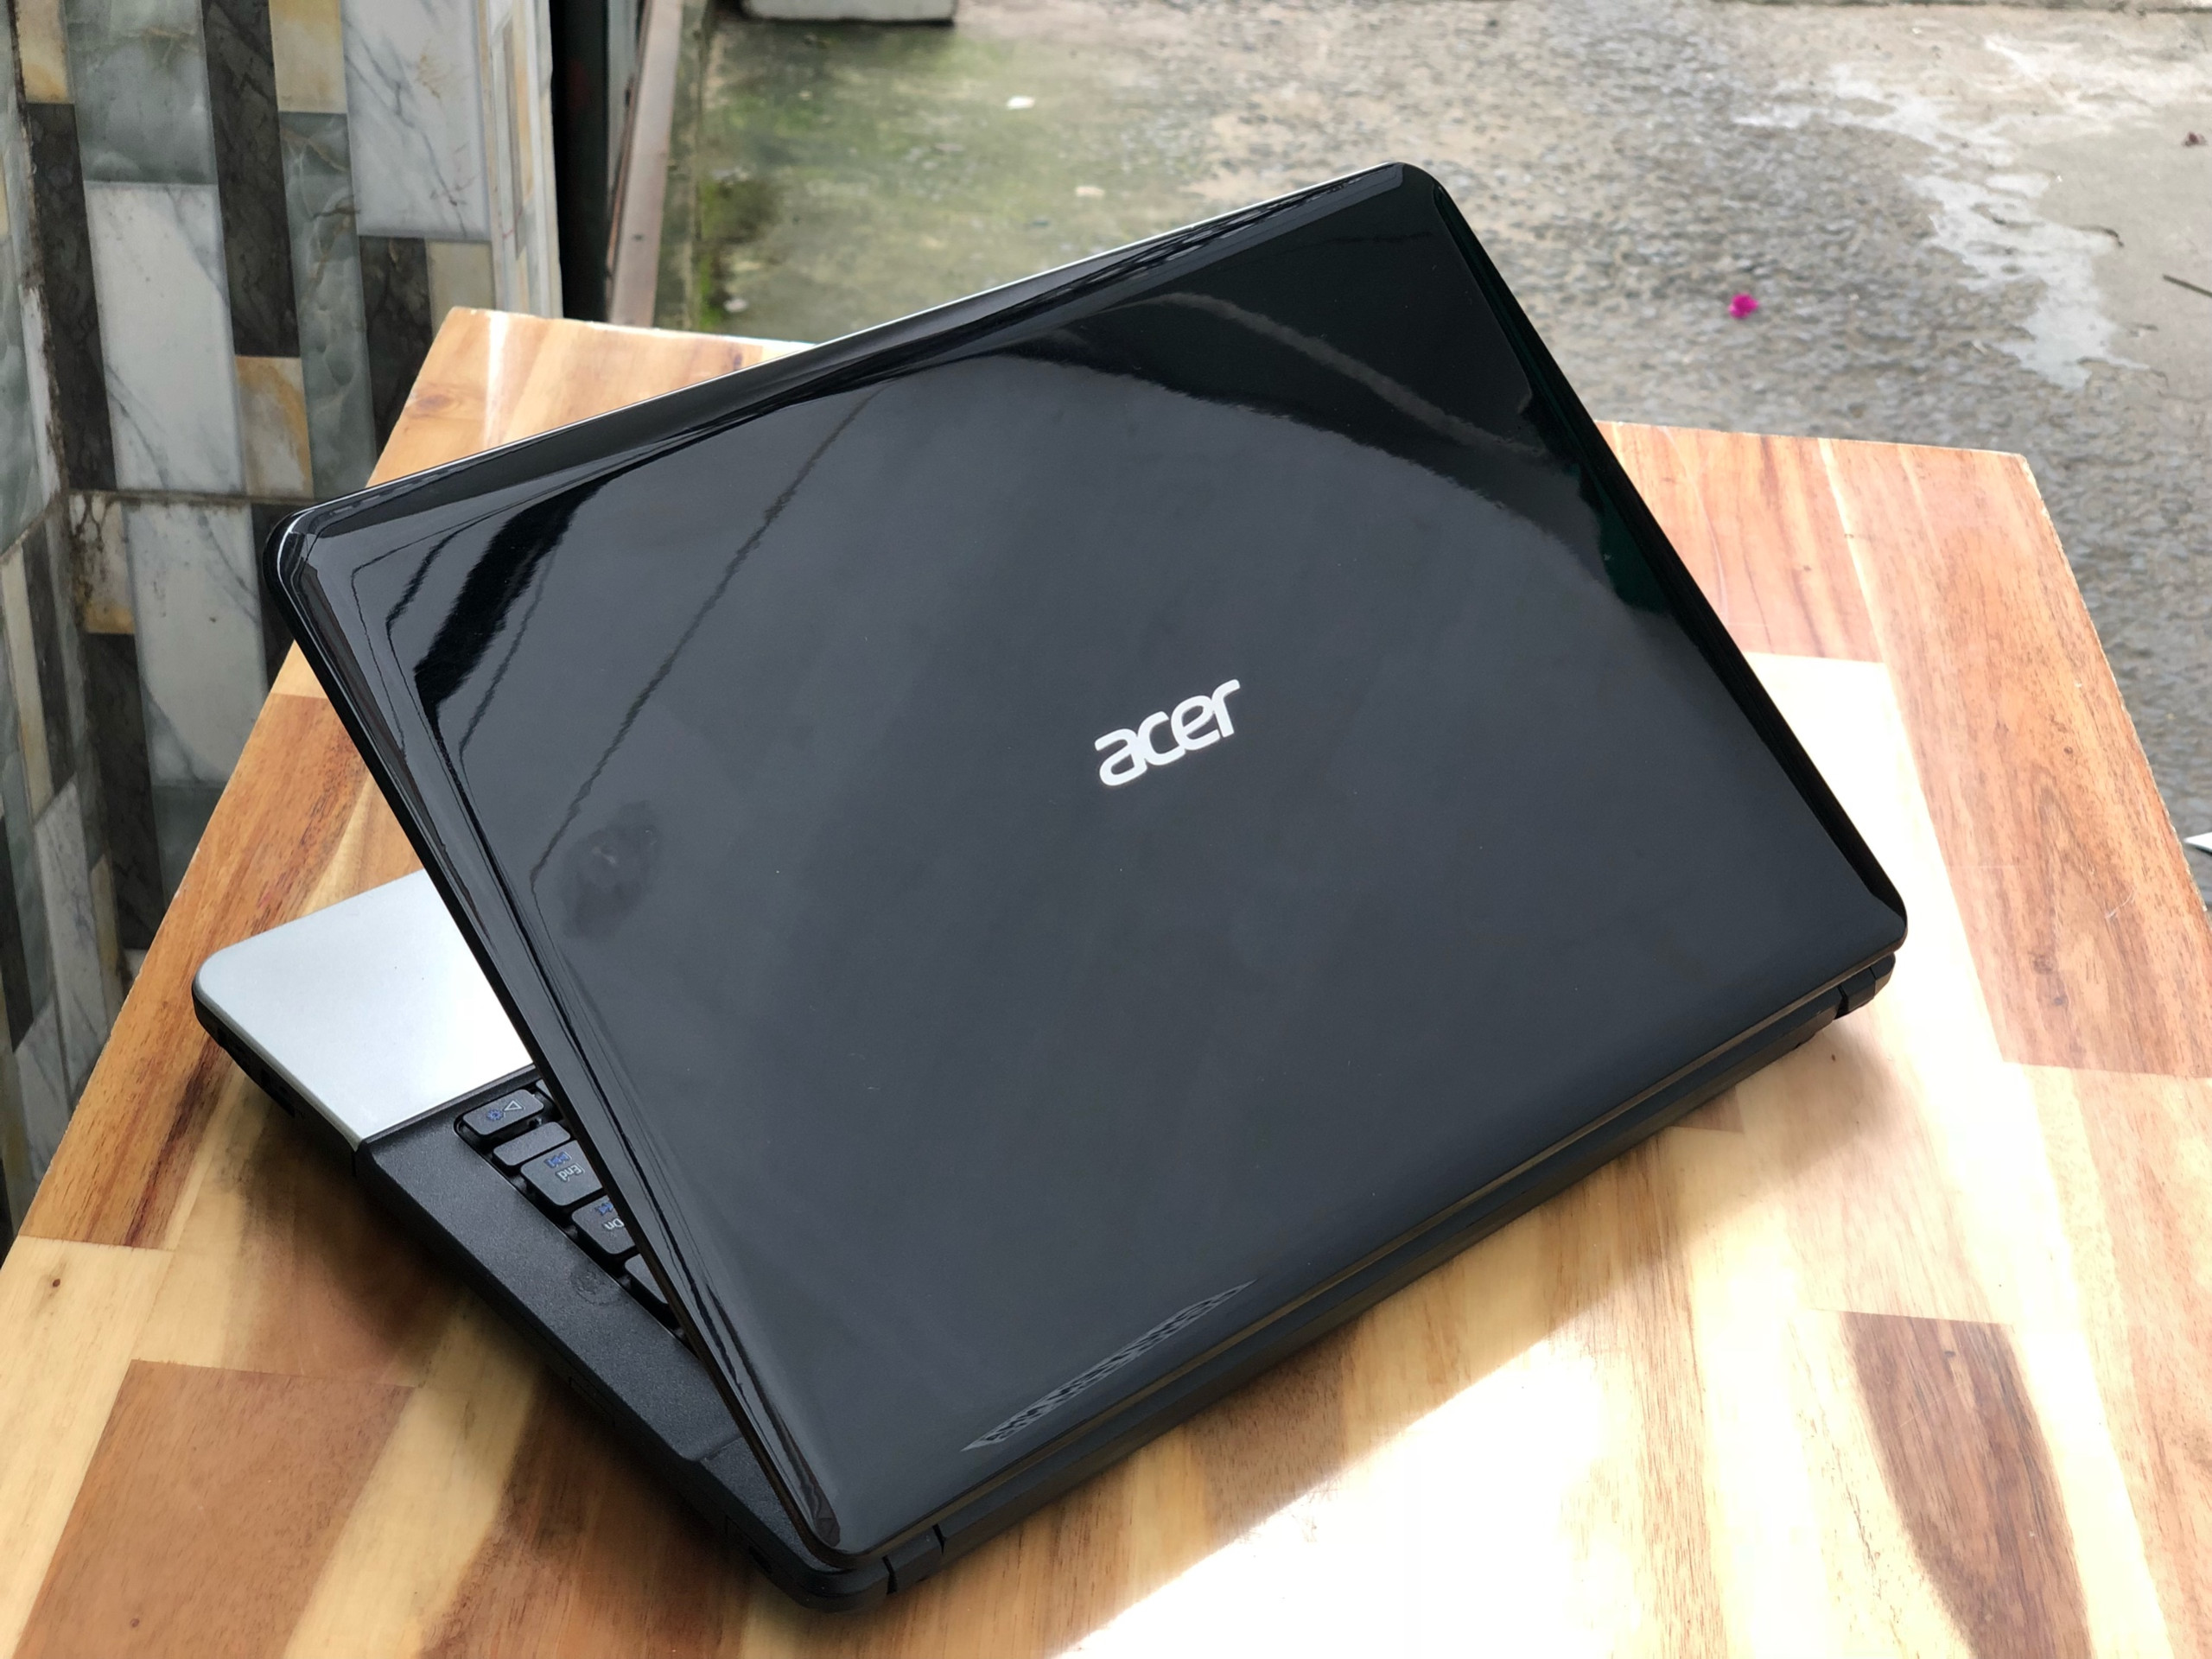 Laptop Acer Aspire E1-431, i3 3110M 4G 500G Đẹp zin 100% Giá rẻ3